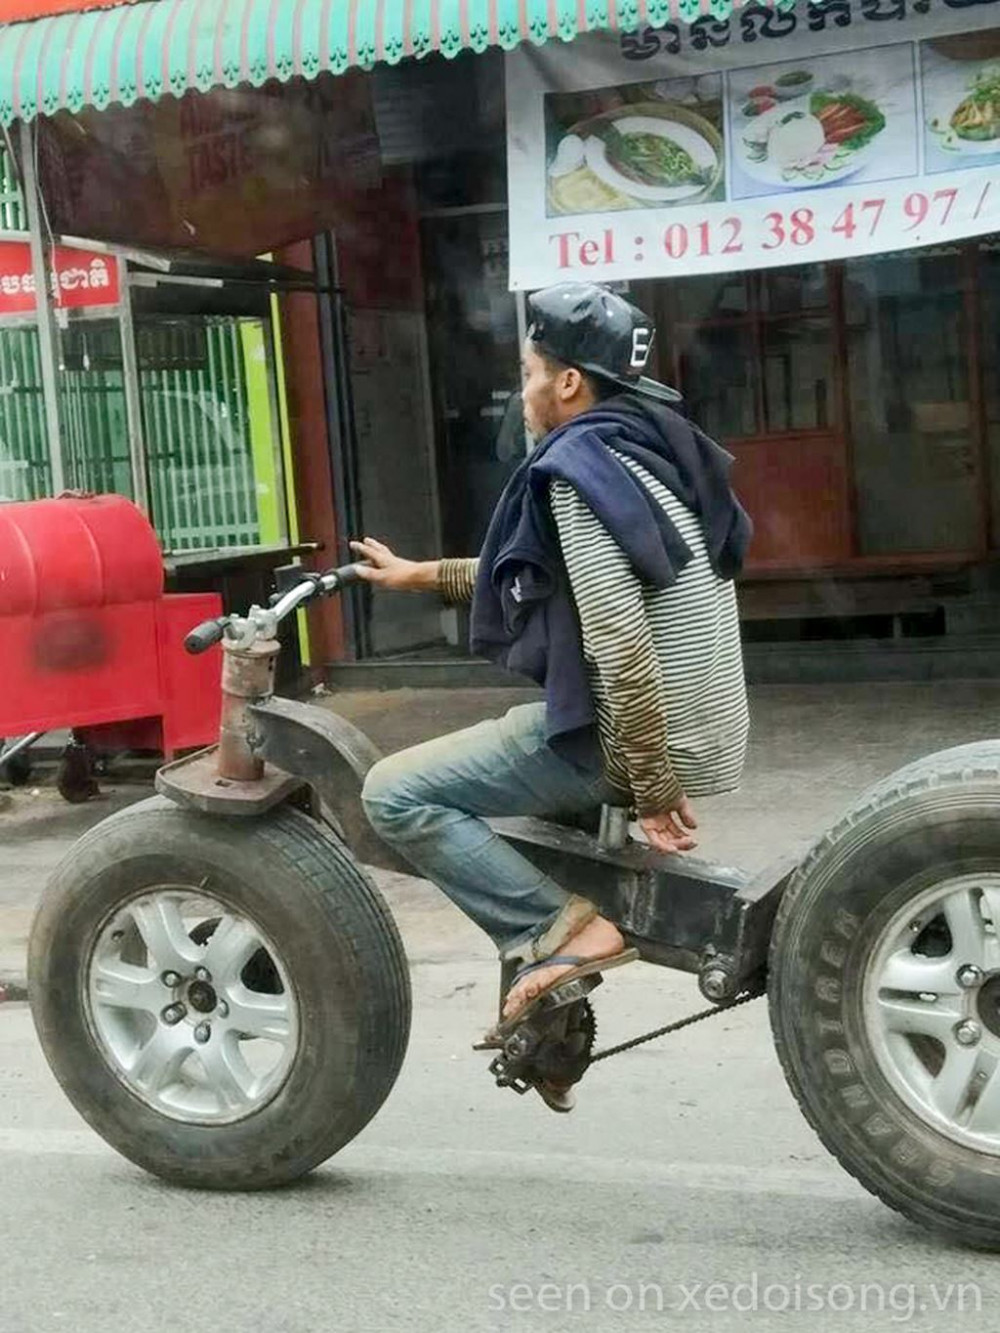 15 hình ảnh giao thông hài hước nhất tuần qua chỉ có ở Việt Nam ...